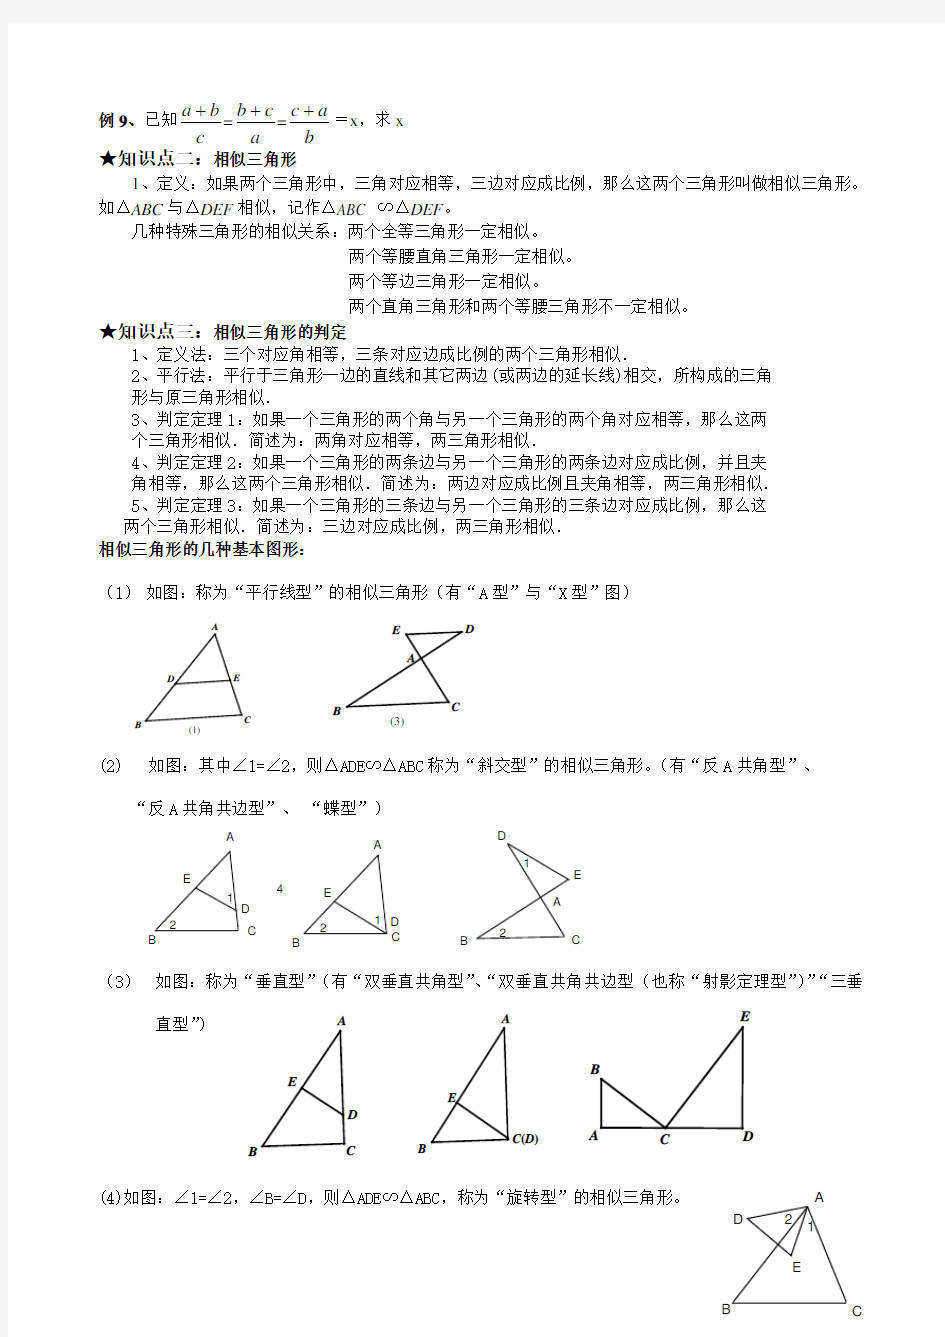 相似三角形基本知识点及典型例题复习课程